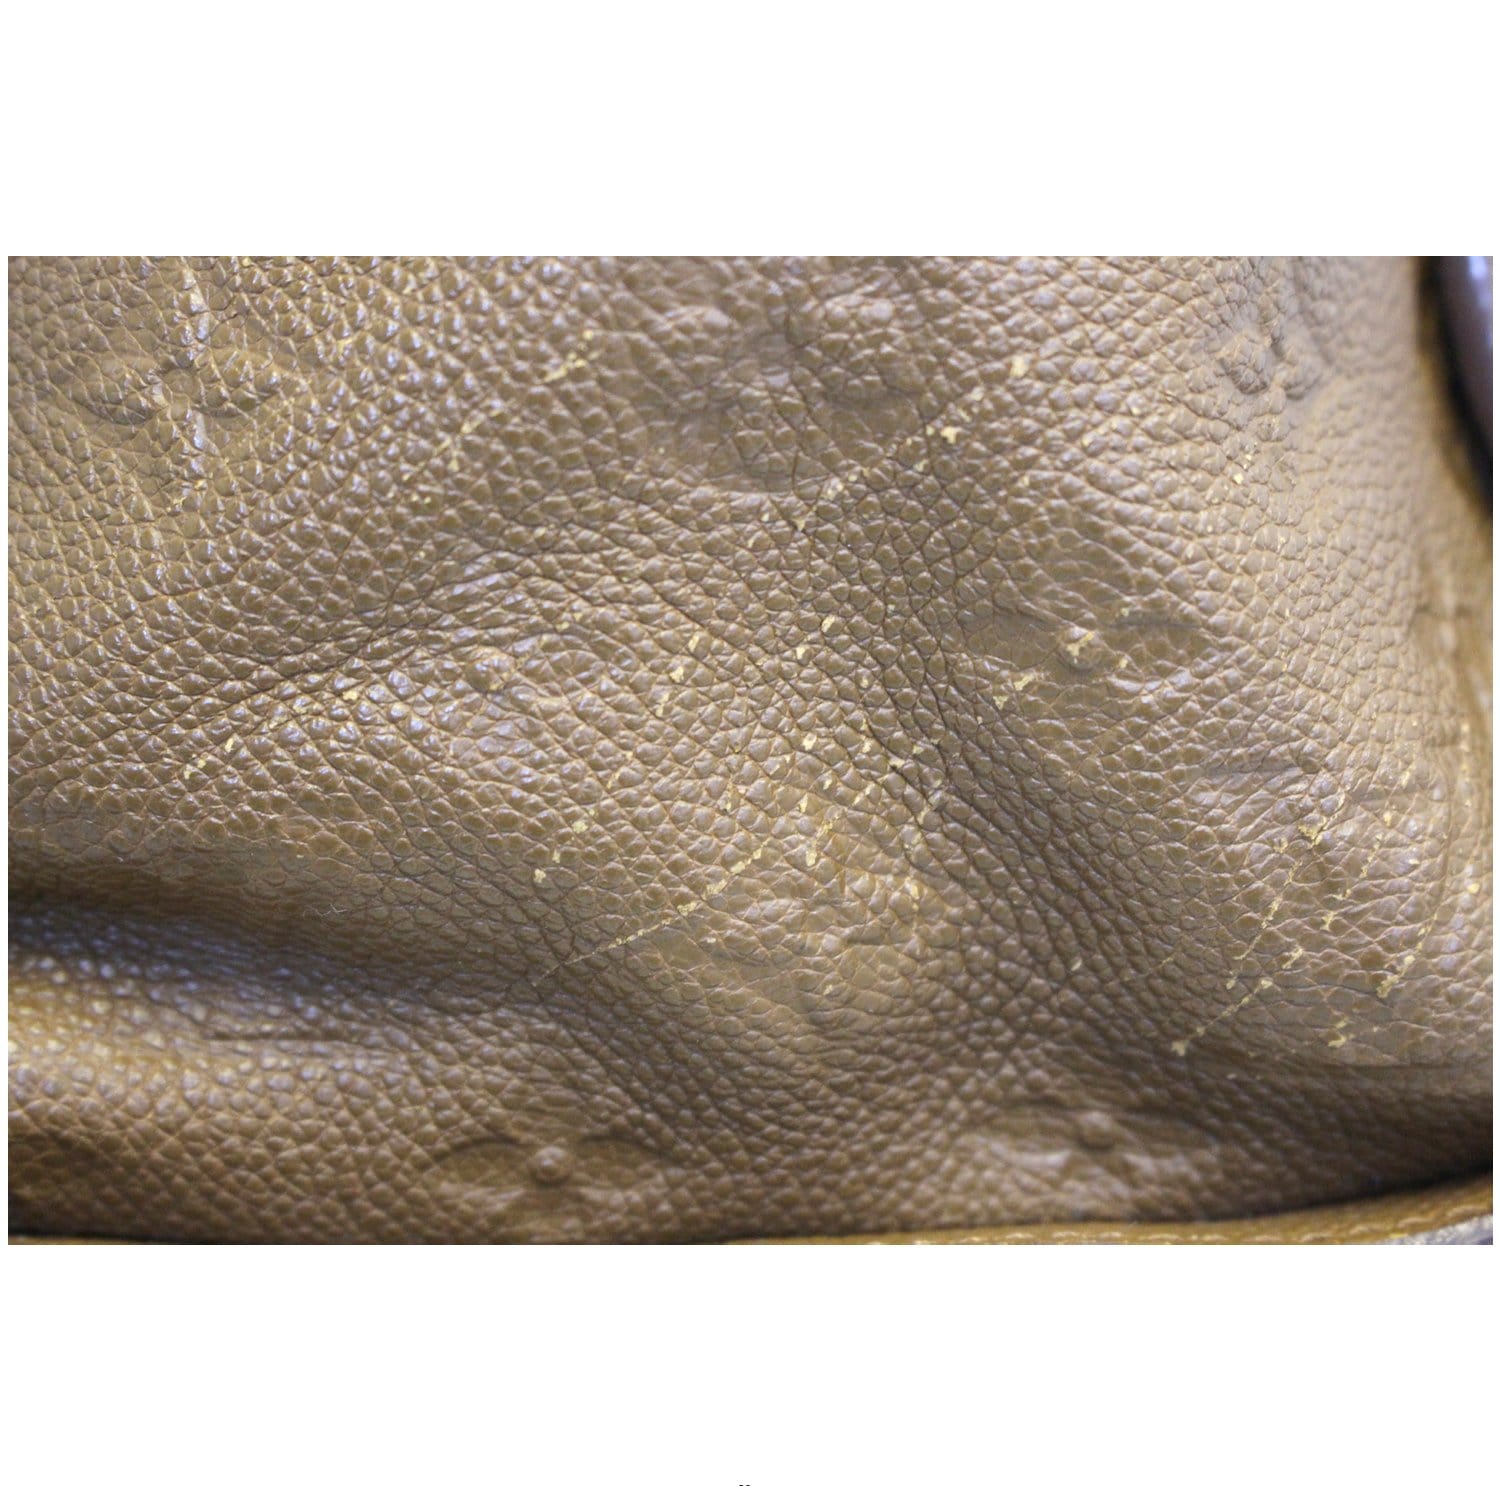 Louis Vuitton Lumineuse Pm 2way Tote 872702 Bordeaux Monogram Empreinte  Leather Shoulder Bag, Louis Vuitton